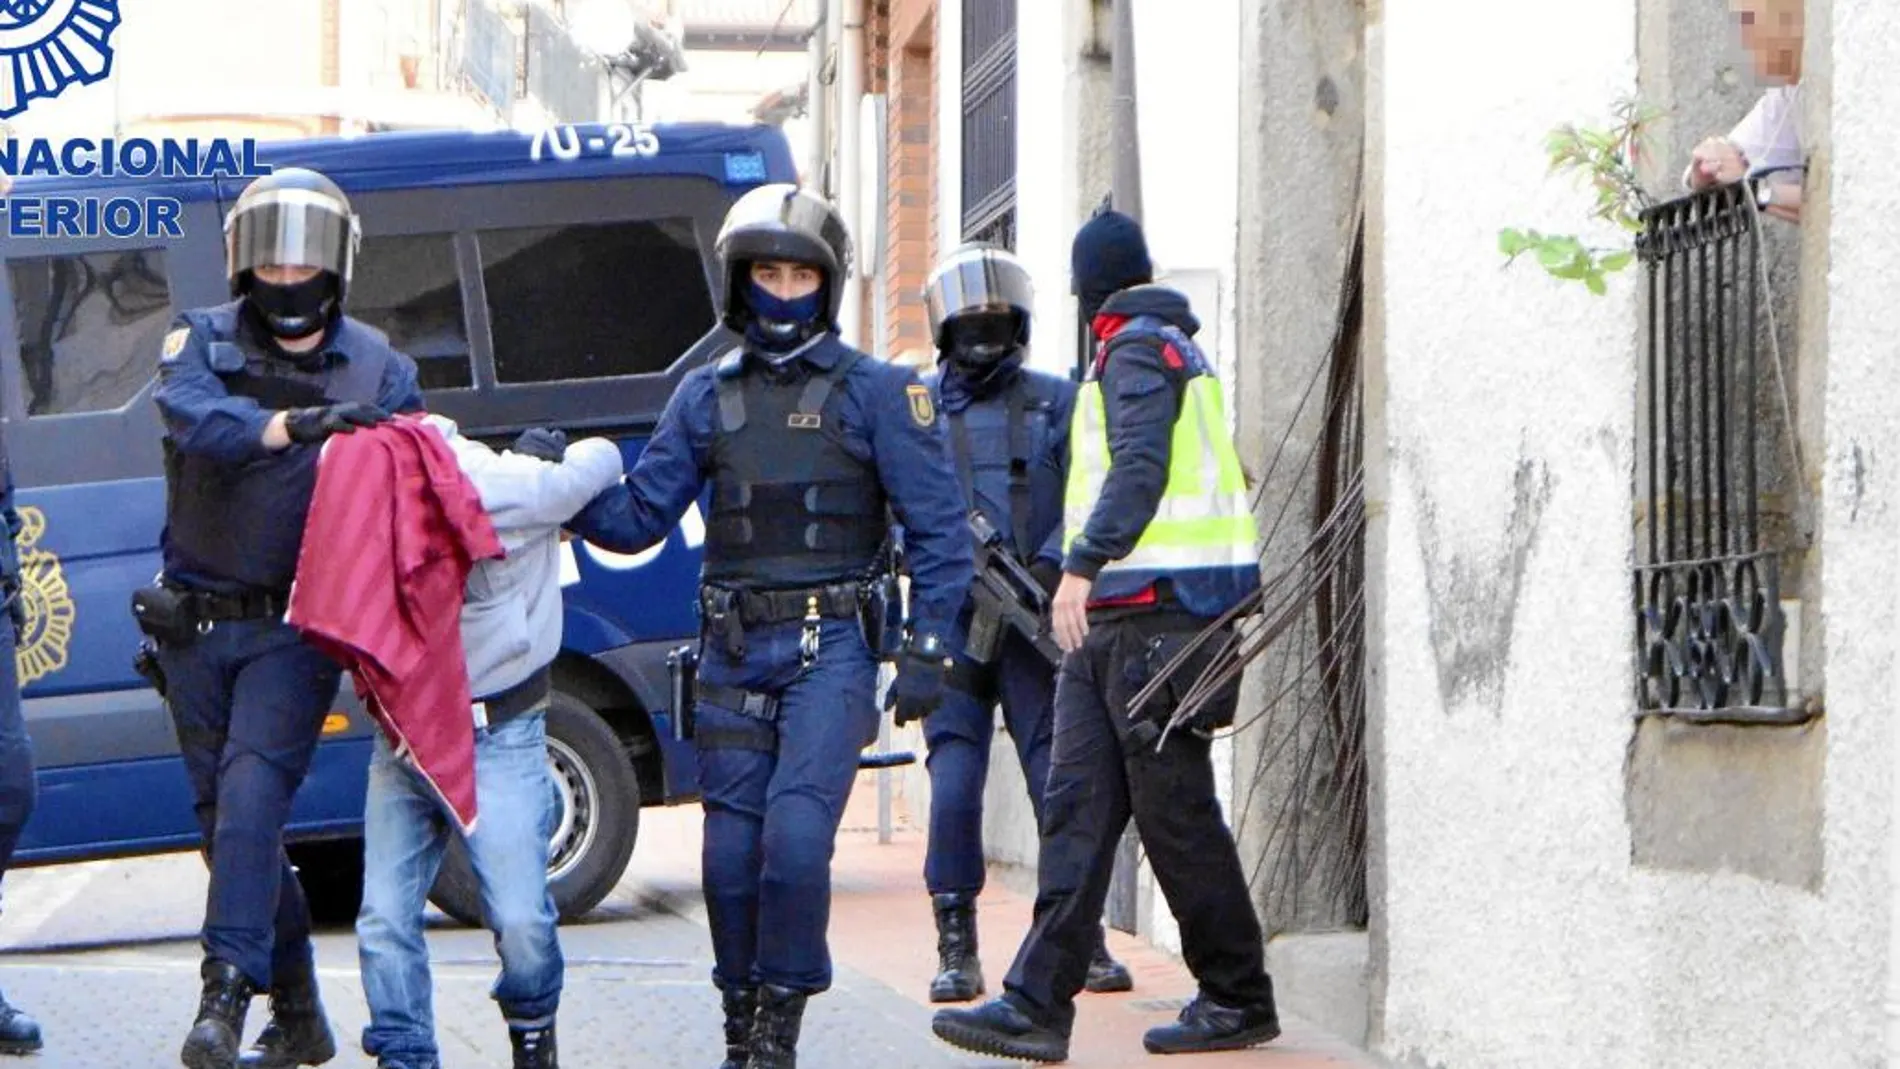 A PRISIÓN. La Policía detiene el pasado viernes en la localidad abulense de Cebreros a uno de los supuestos integrantes de esta célula yihadista